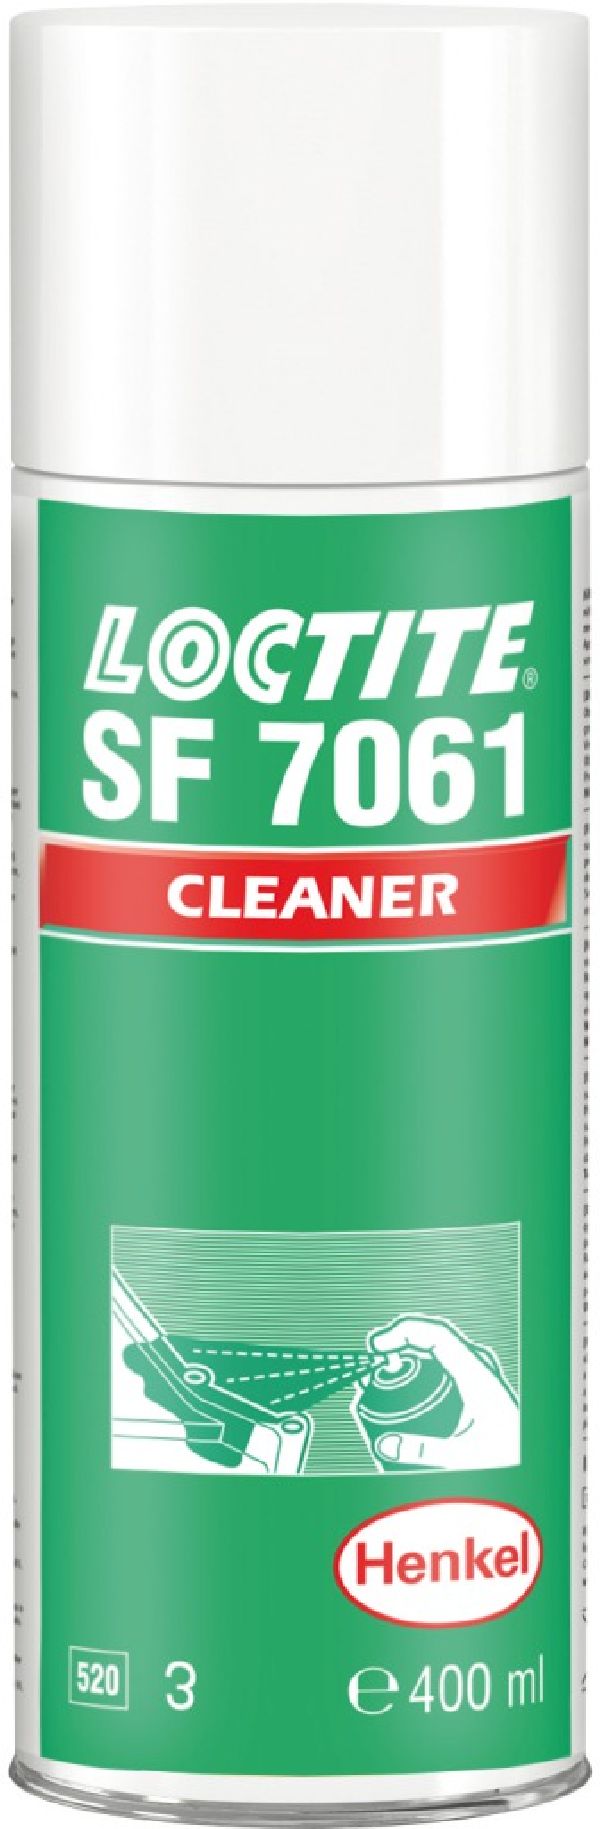 Loctite SF 7061